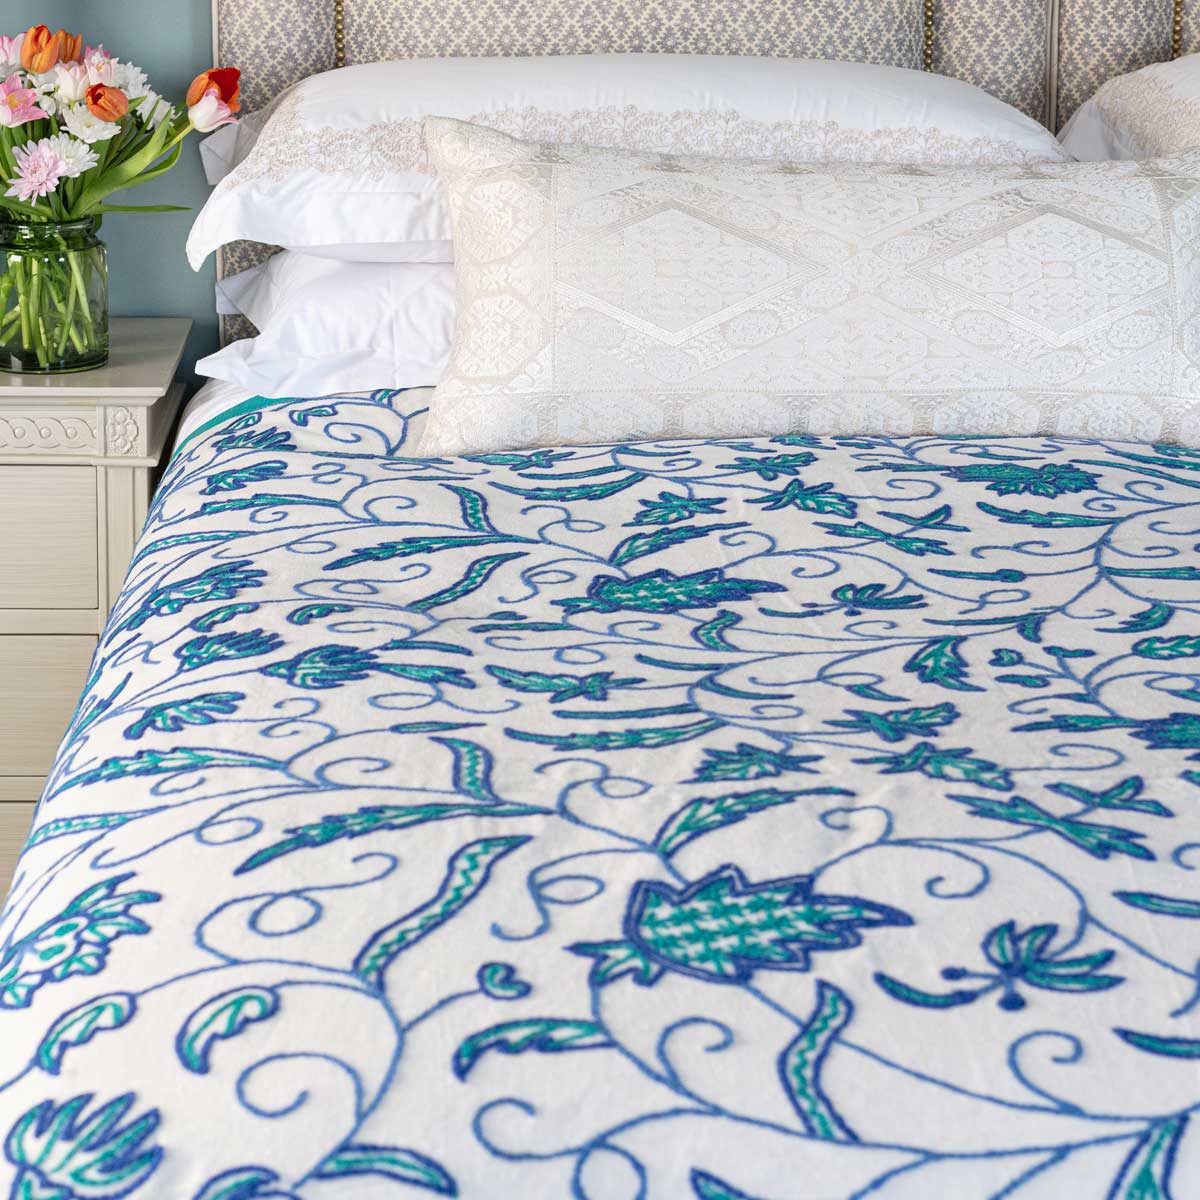 crewel bedspread, crewel work, crewel embroidery, embroidered bed linen, embroidered bedspreads, embroidered bedding, 